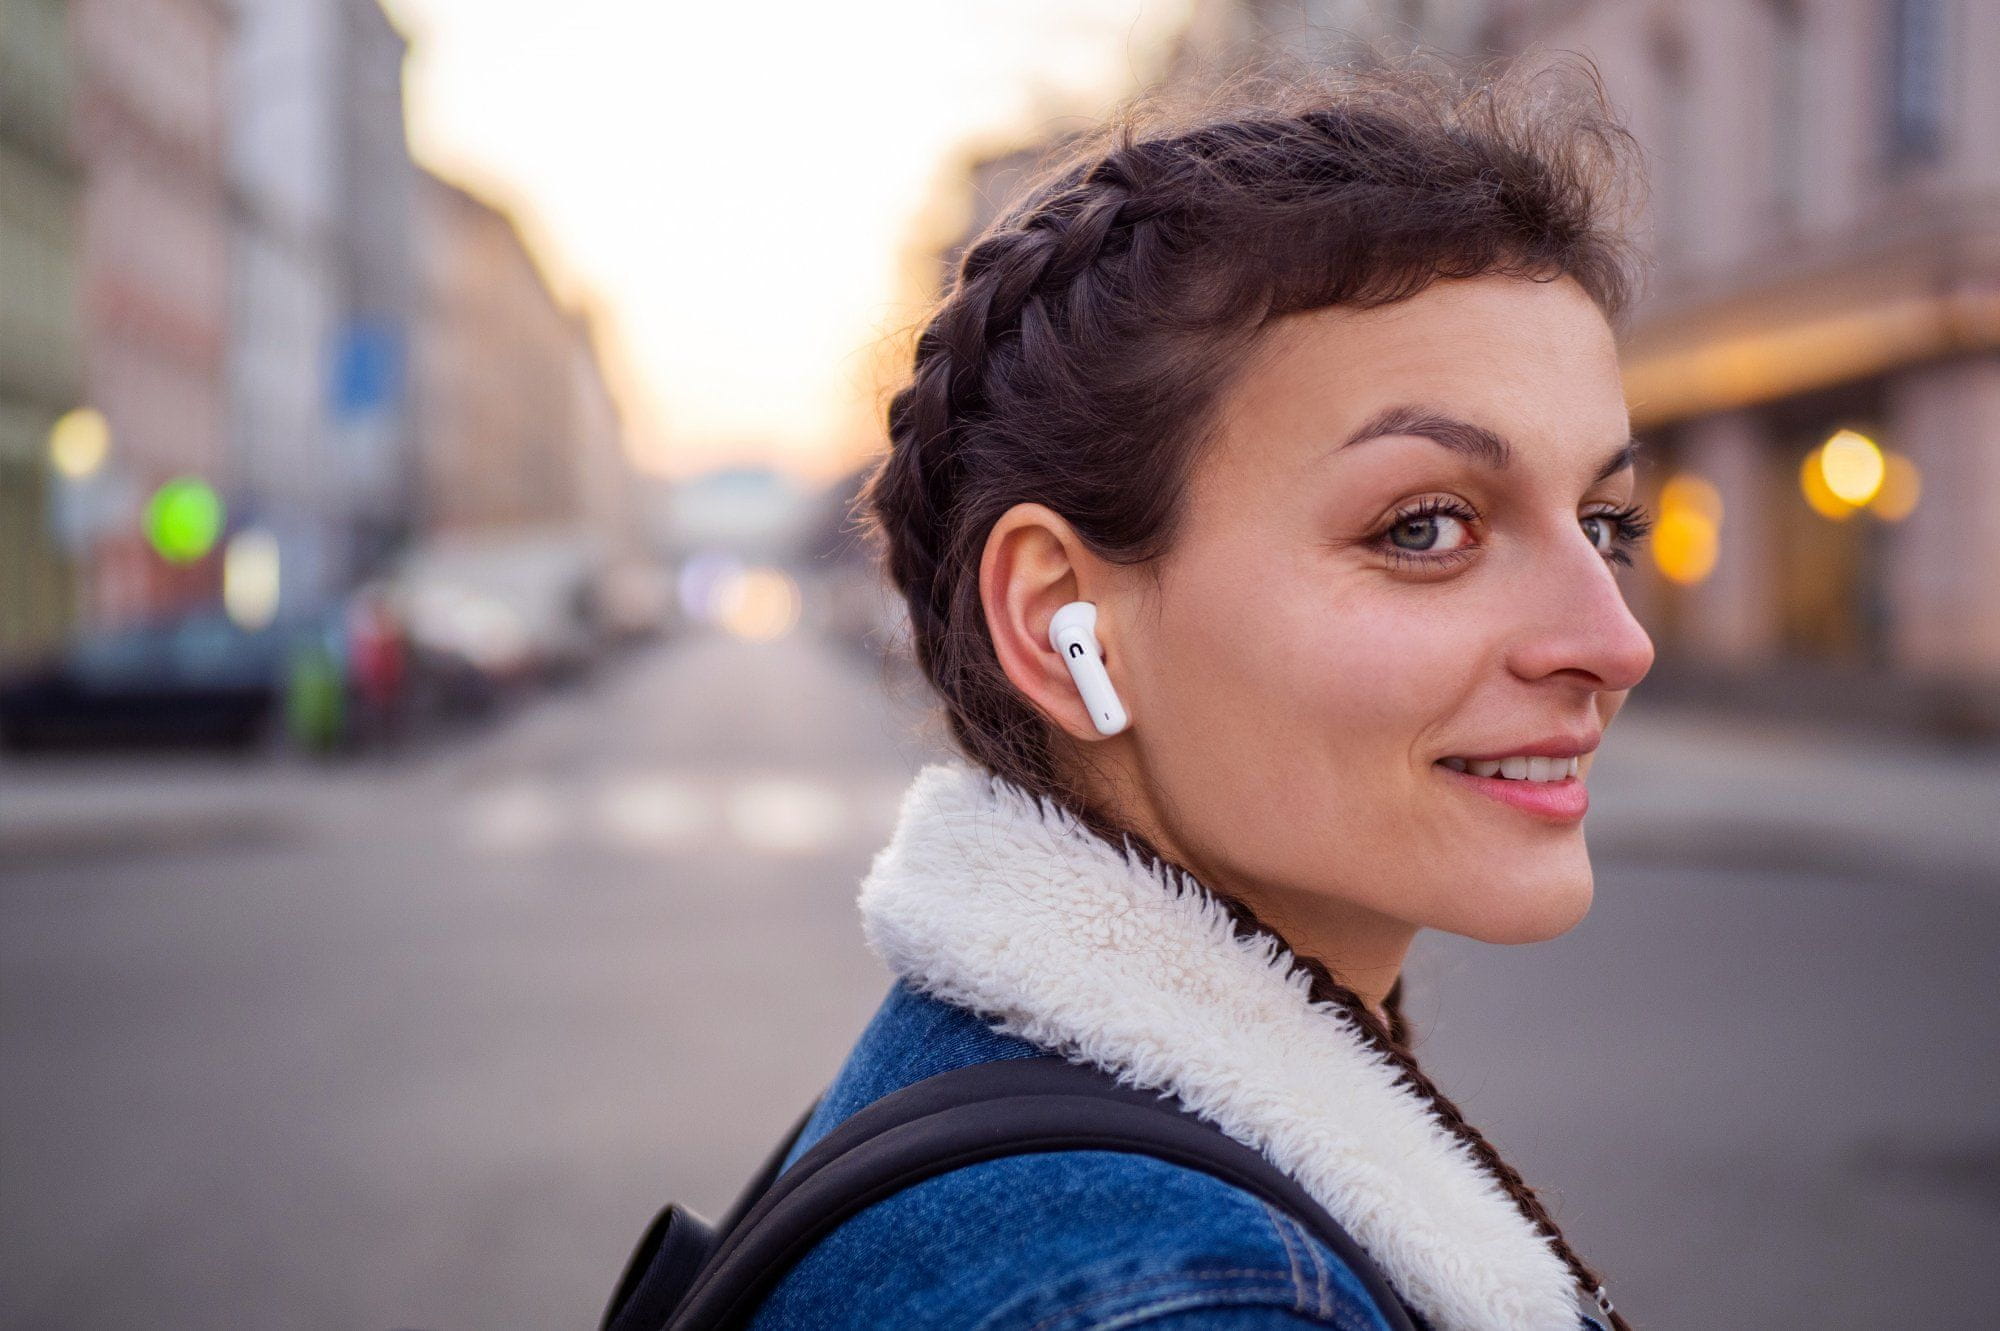  Bluetooth 5.0 sluchátka niceboy hive pins nabíjecí box celkem 18 h provozu na nabití 4 h provozu ipx4 odolnost vodě dotykové ovládání na sluchátkách podpora hlasových asistentů handsfree mikrofon 